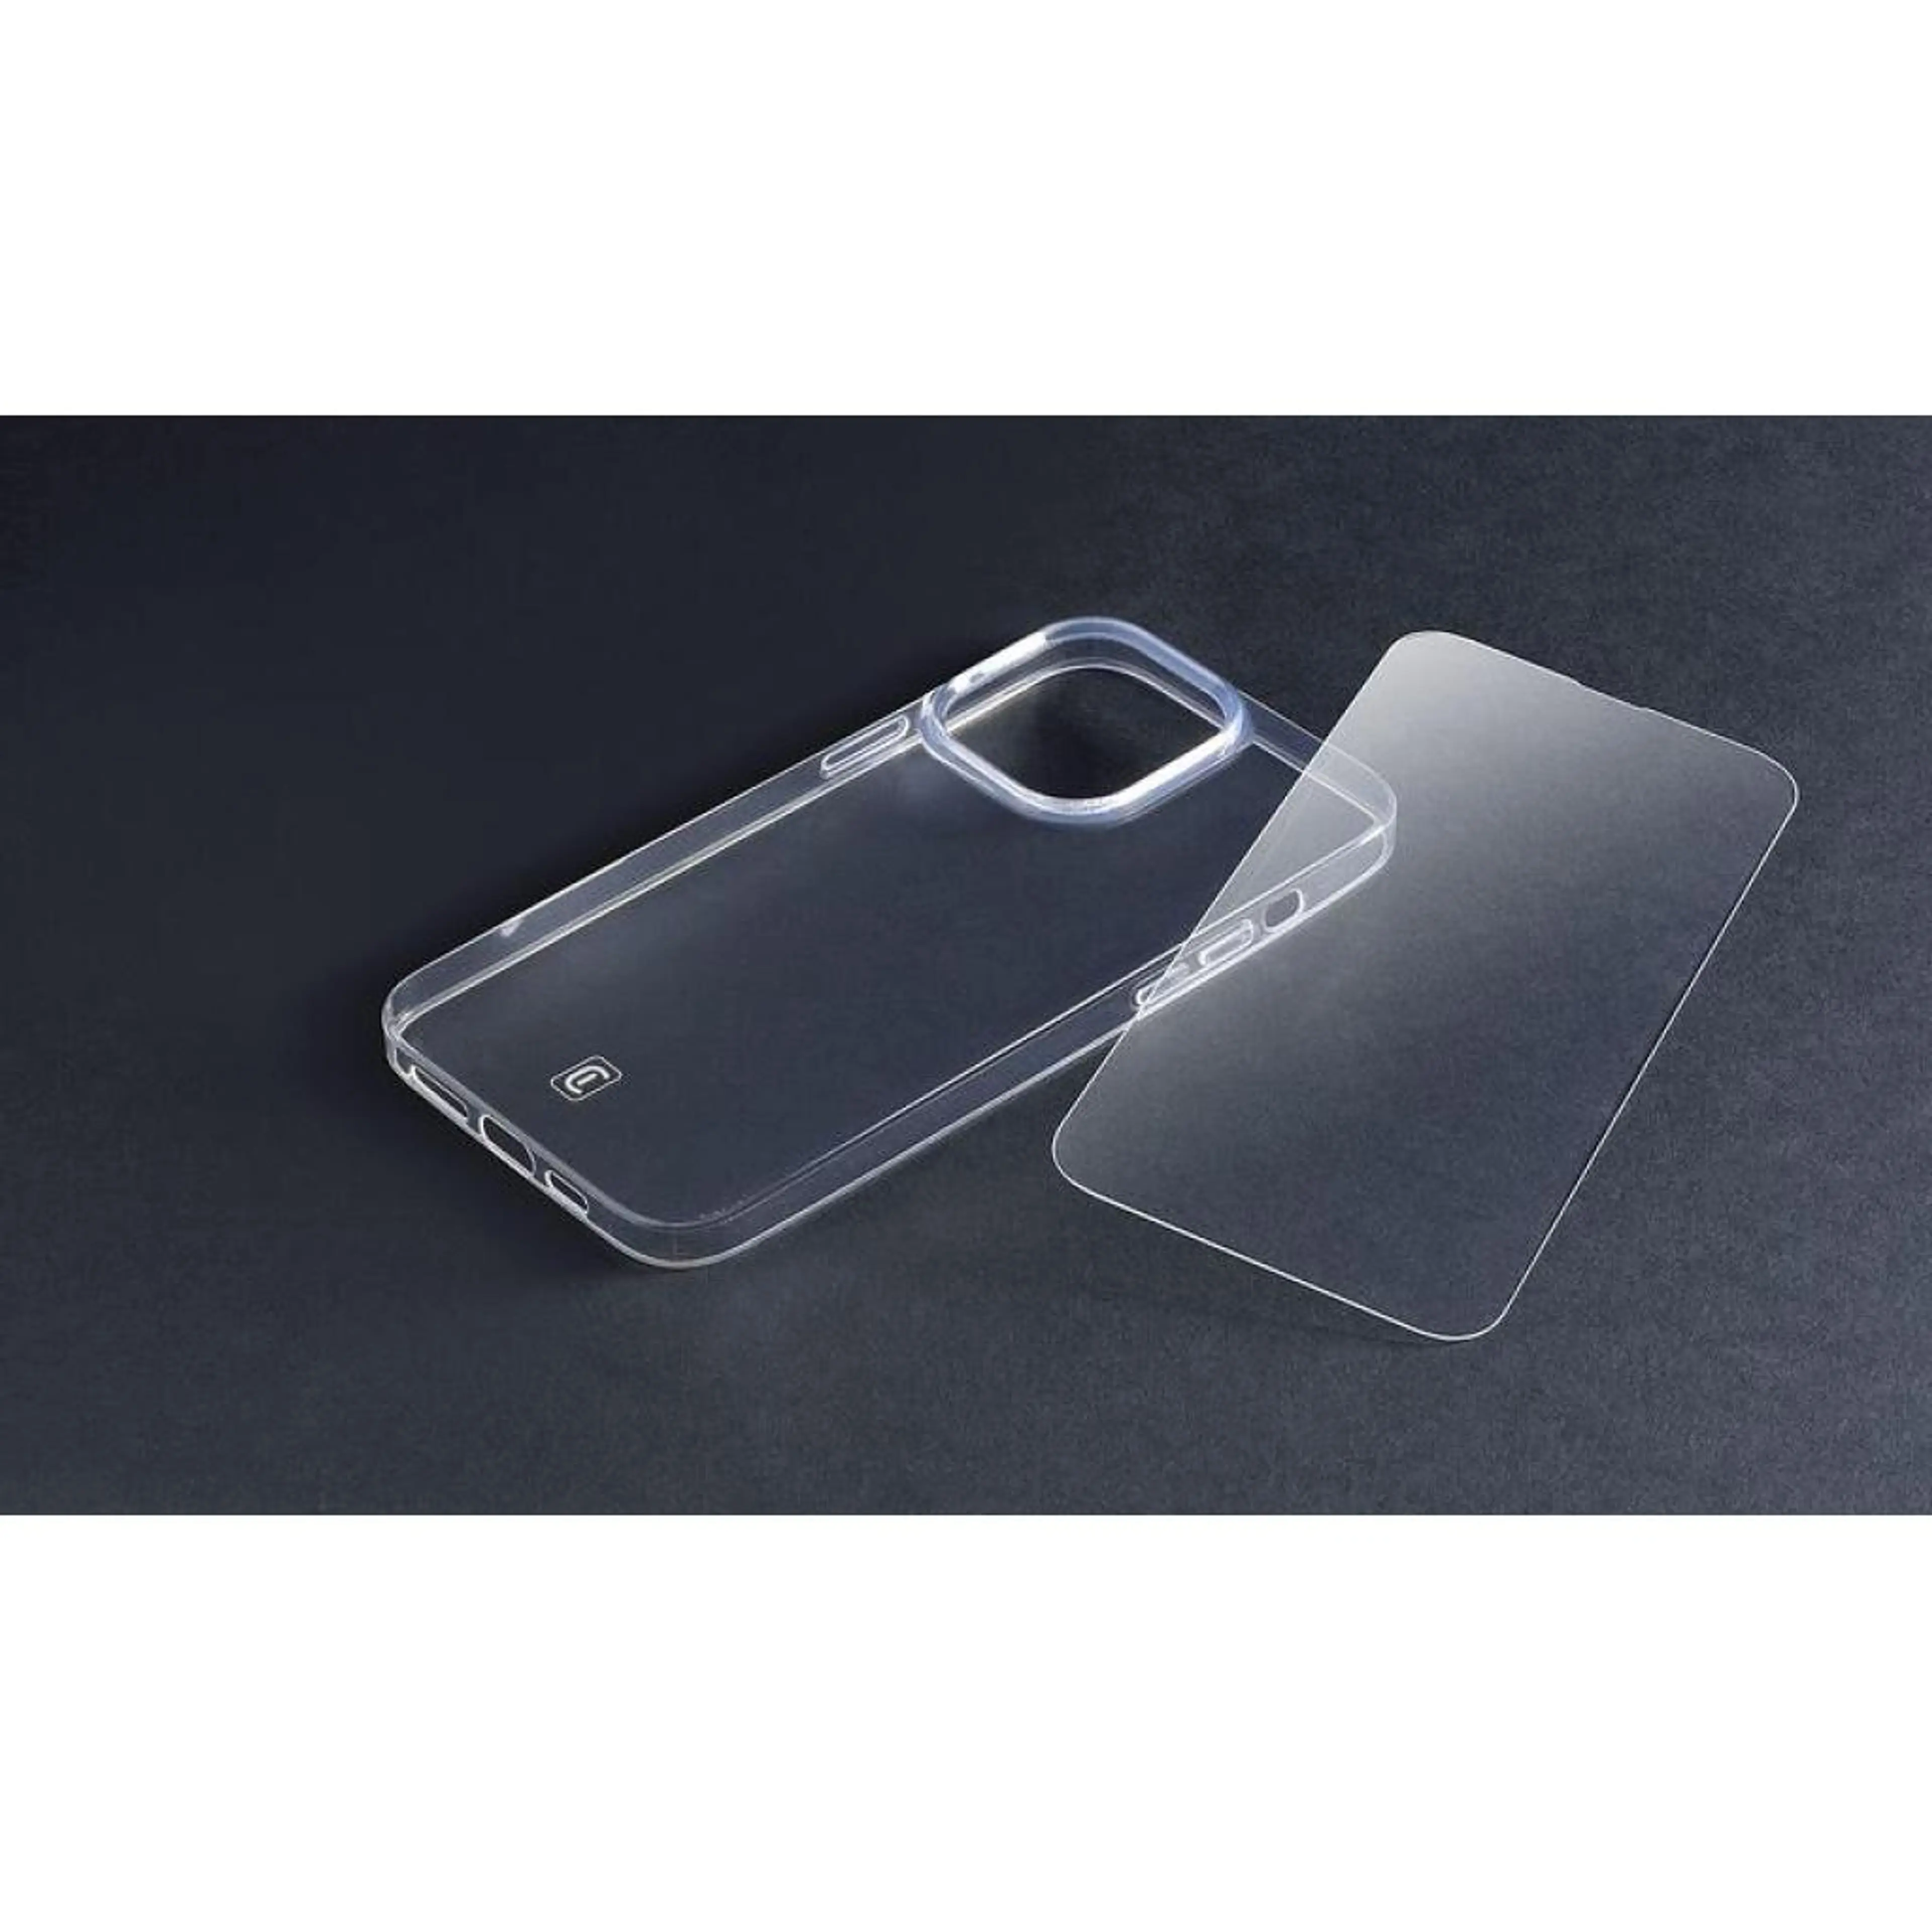 Пакет за iPhone 14 Pro Max- прозрачен калъф + протектор